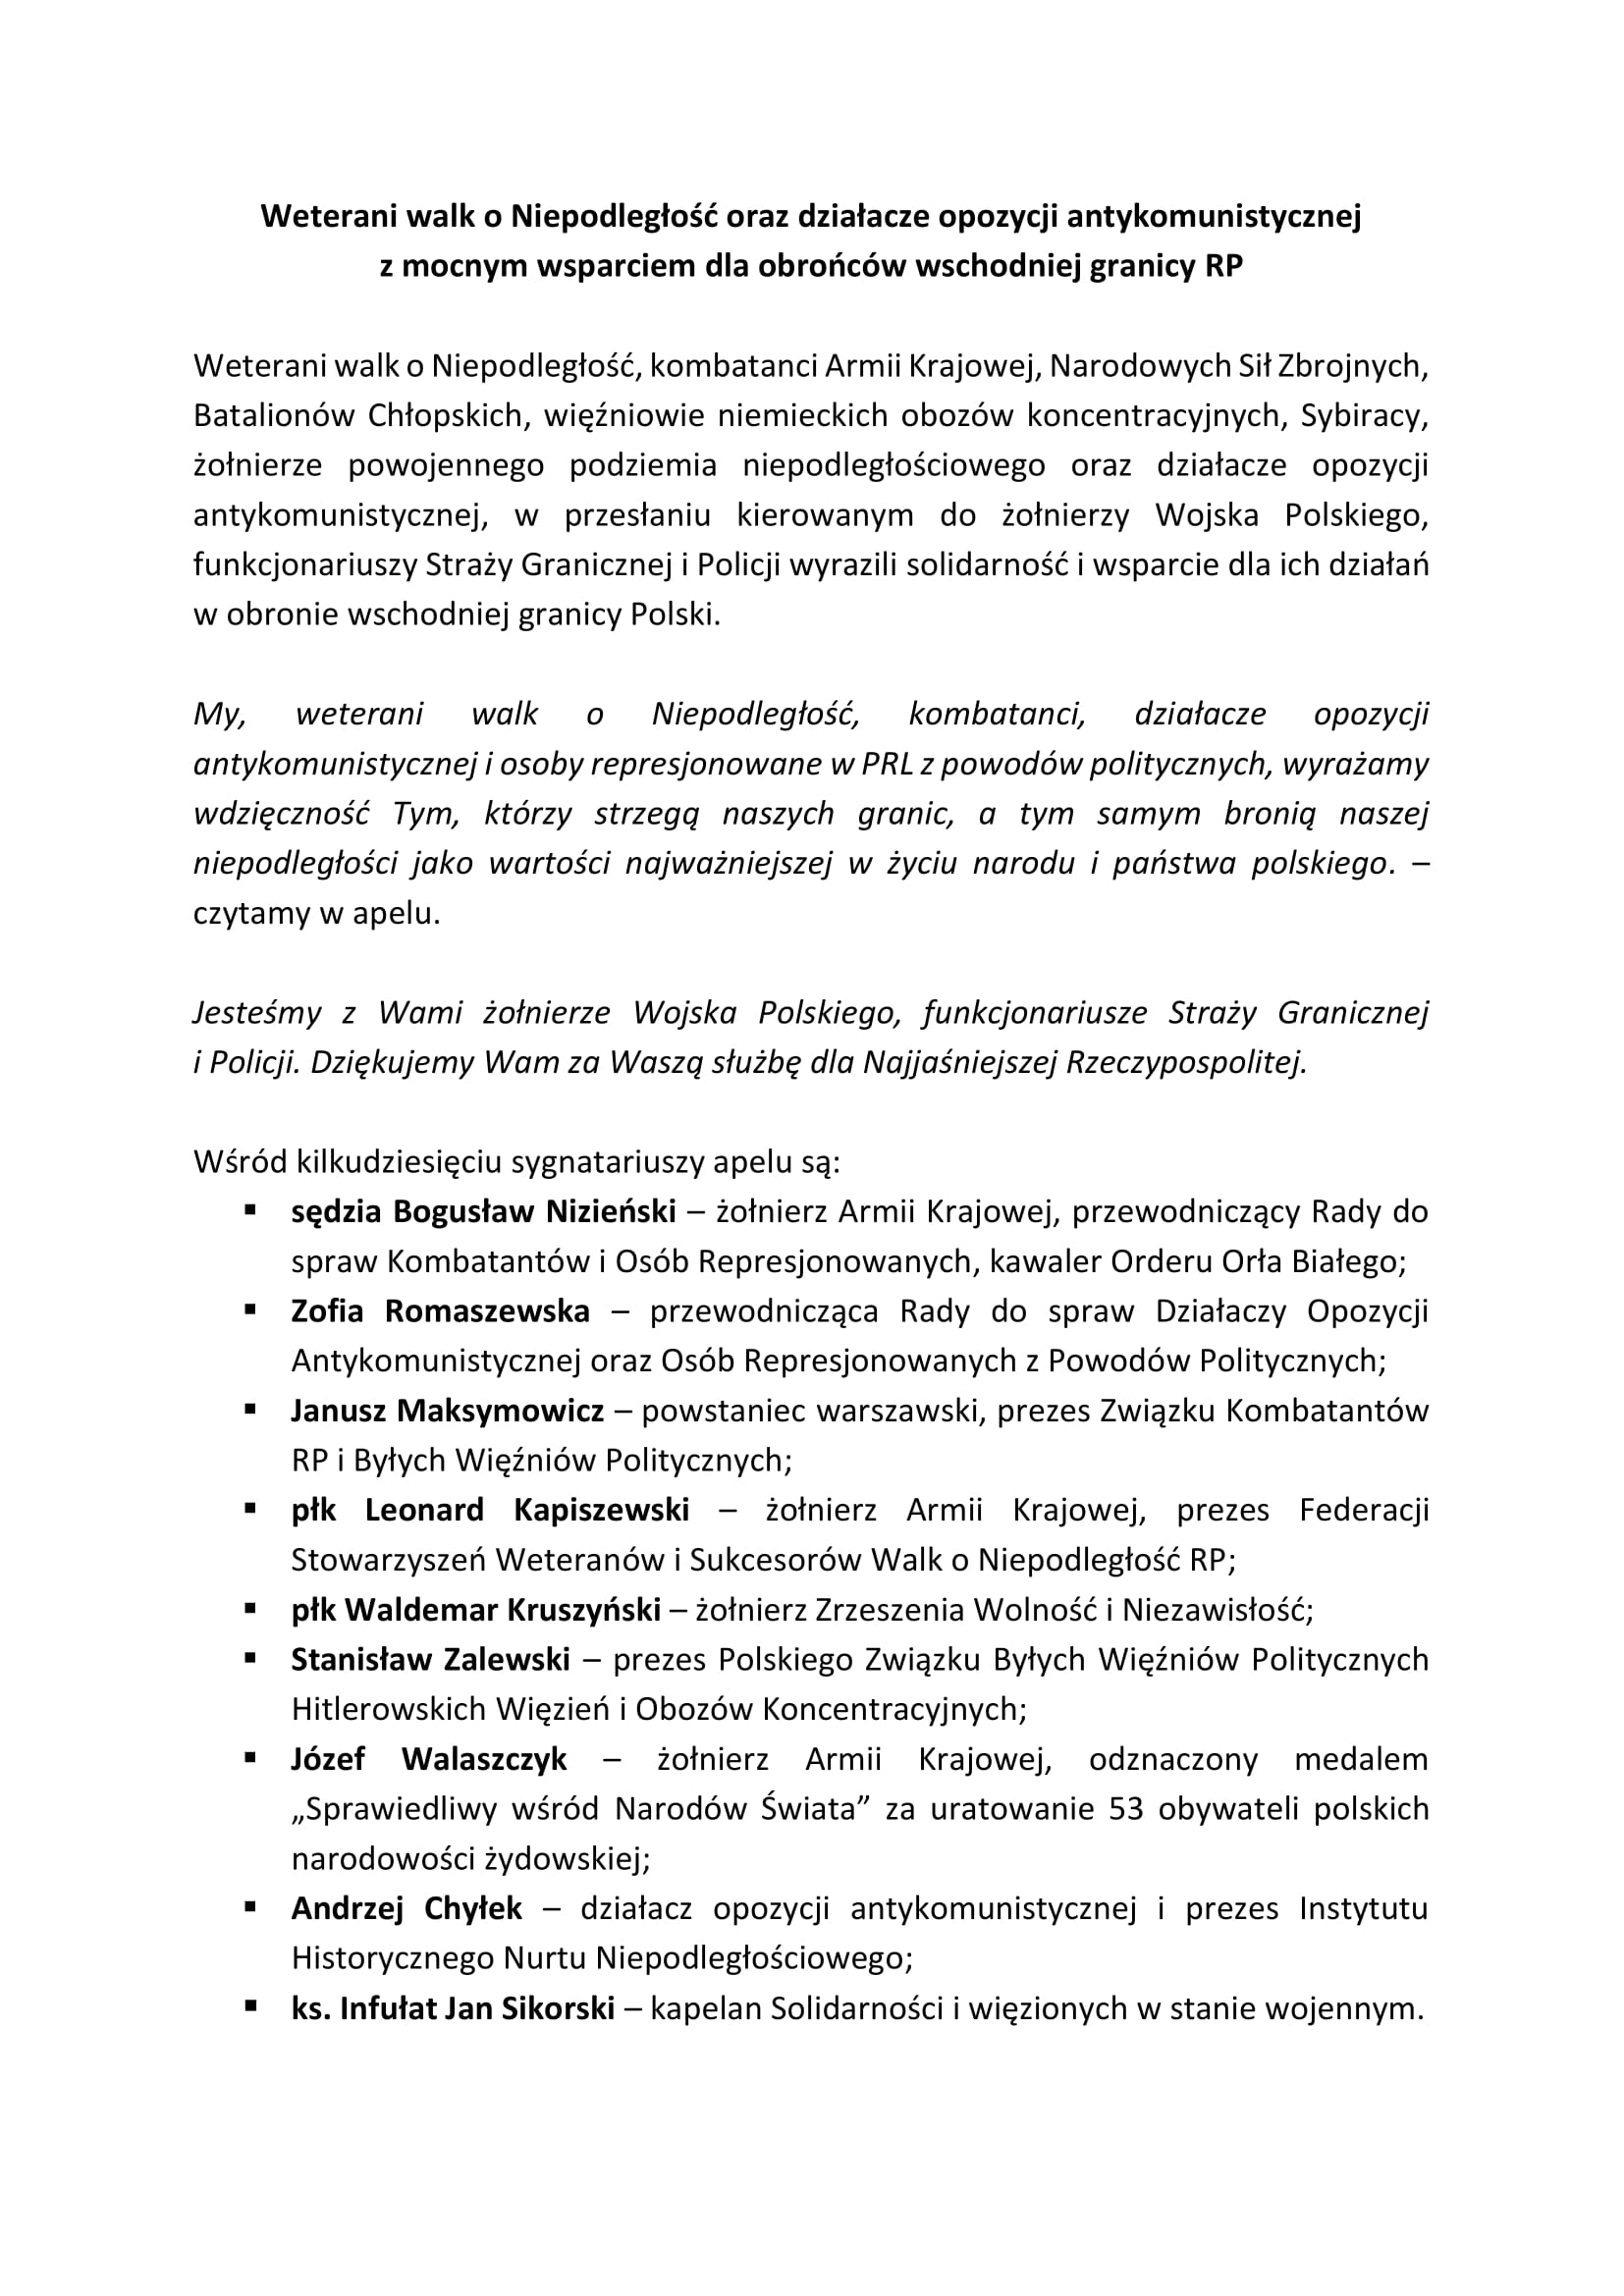 Apel weteranow walk o Niepodleglosc RP i dzialaczy opozycji antykomunistycznej 14.11